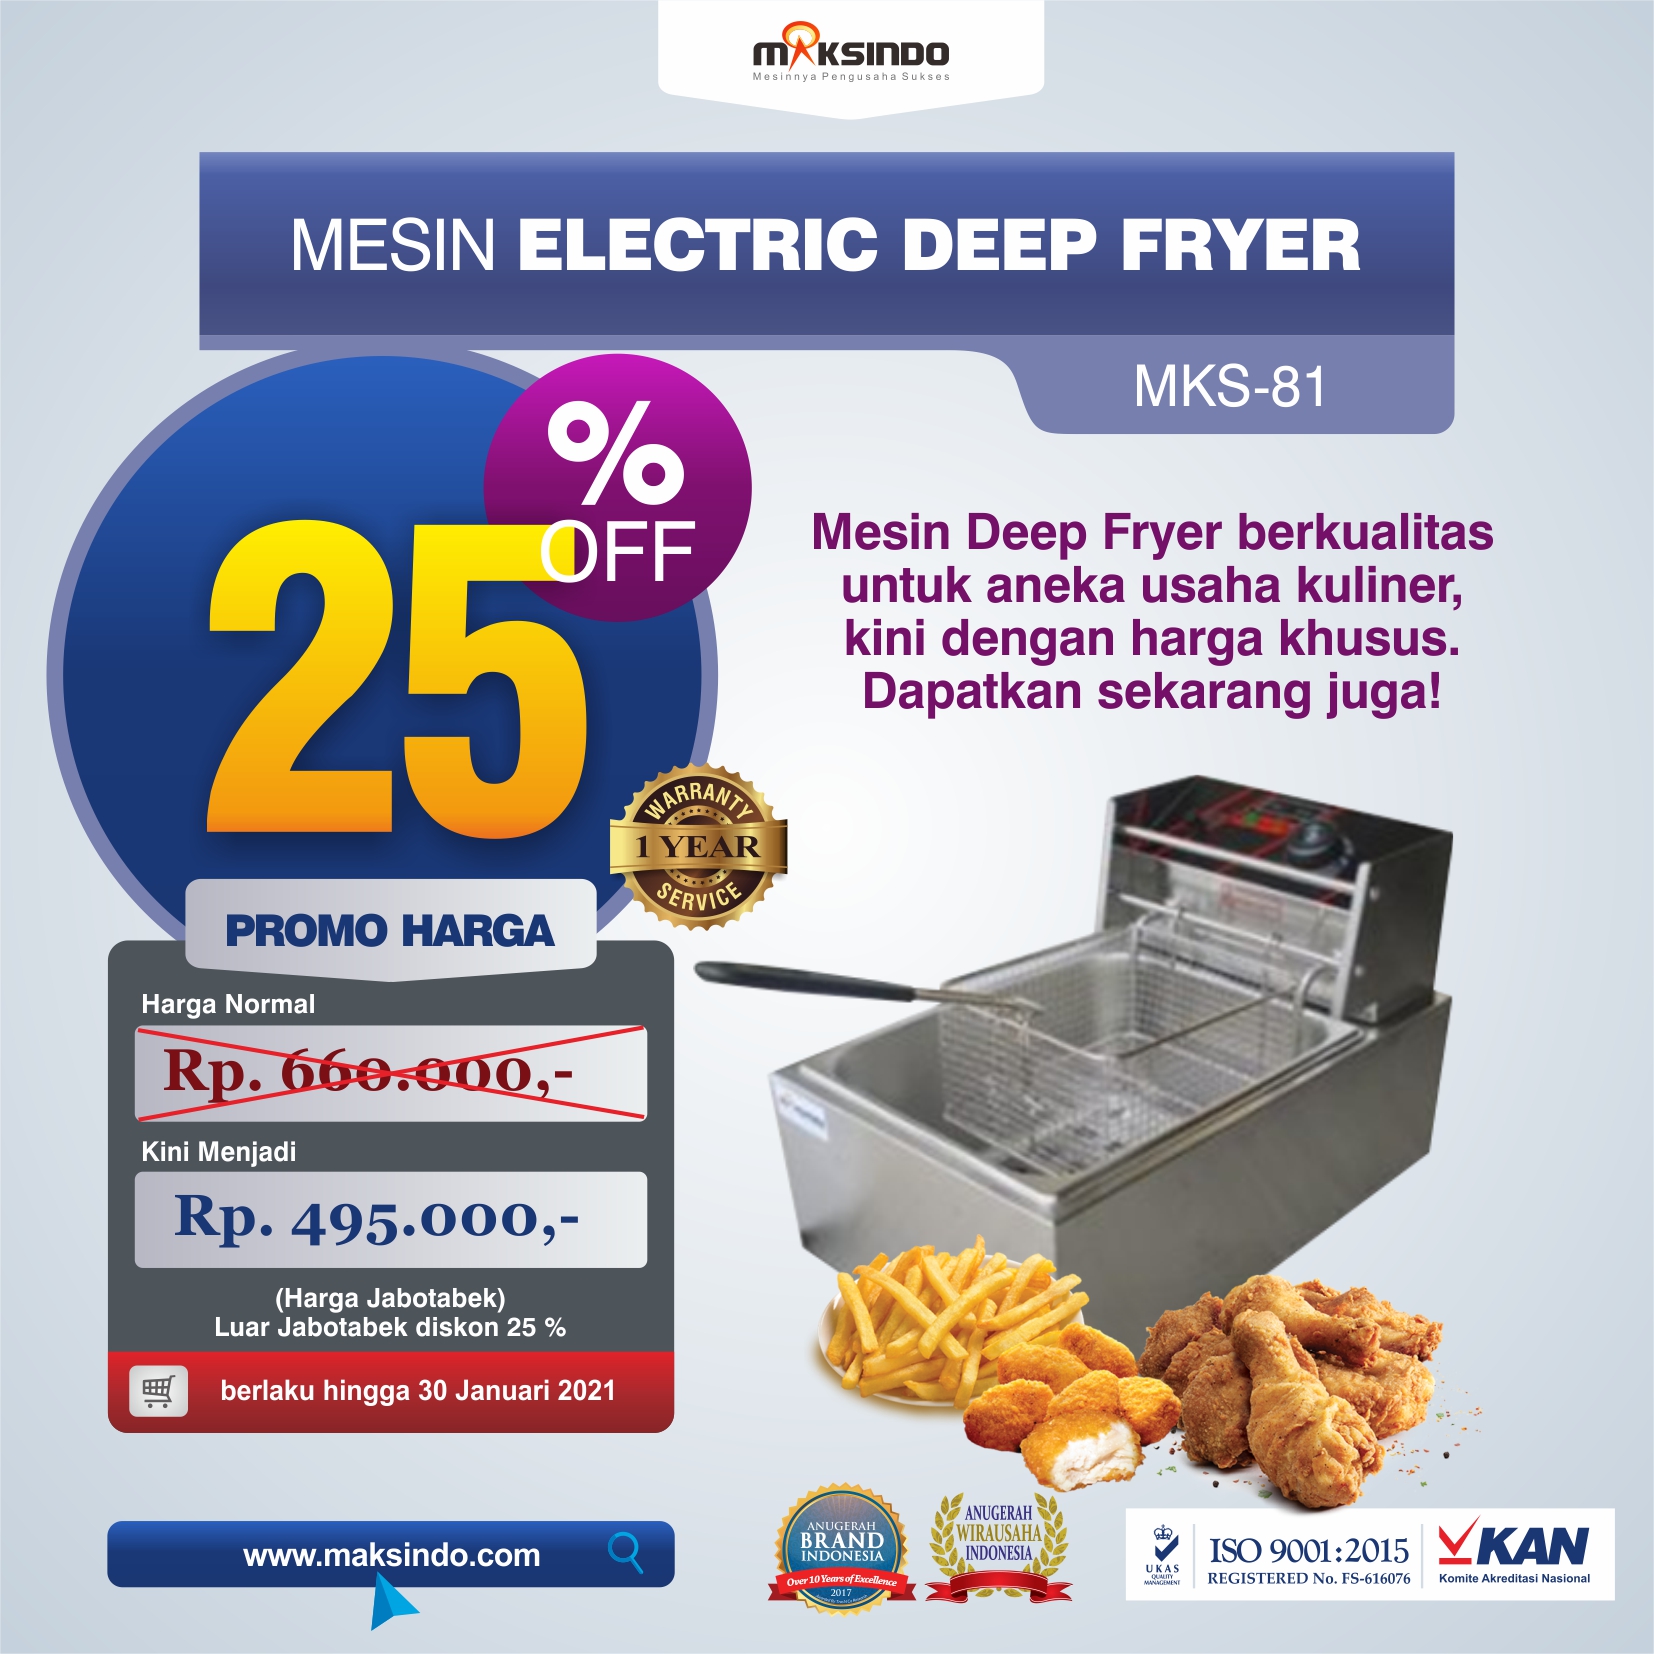 Jual Mesin Electric Deep Fryer MKS-81 di Semarang